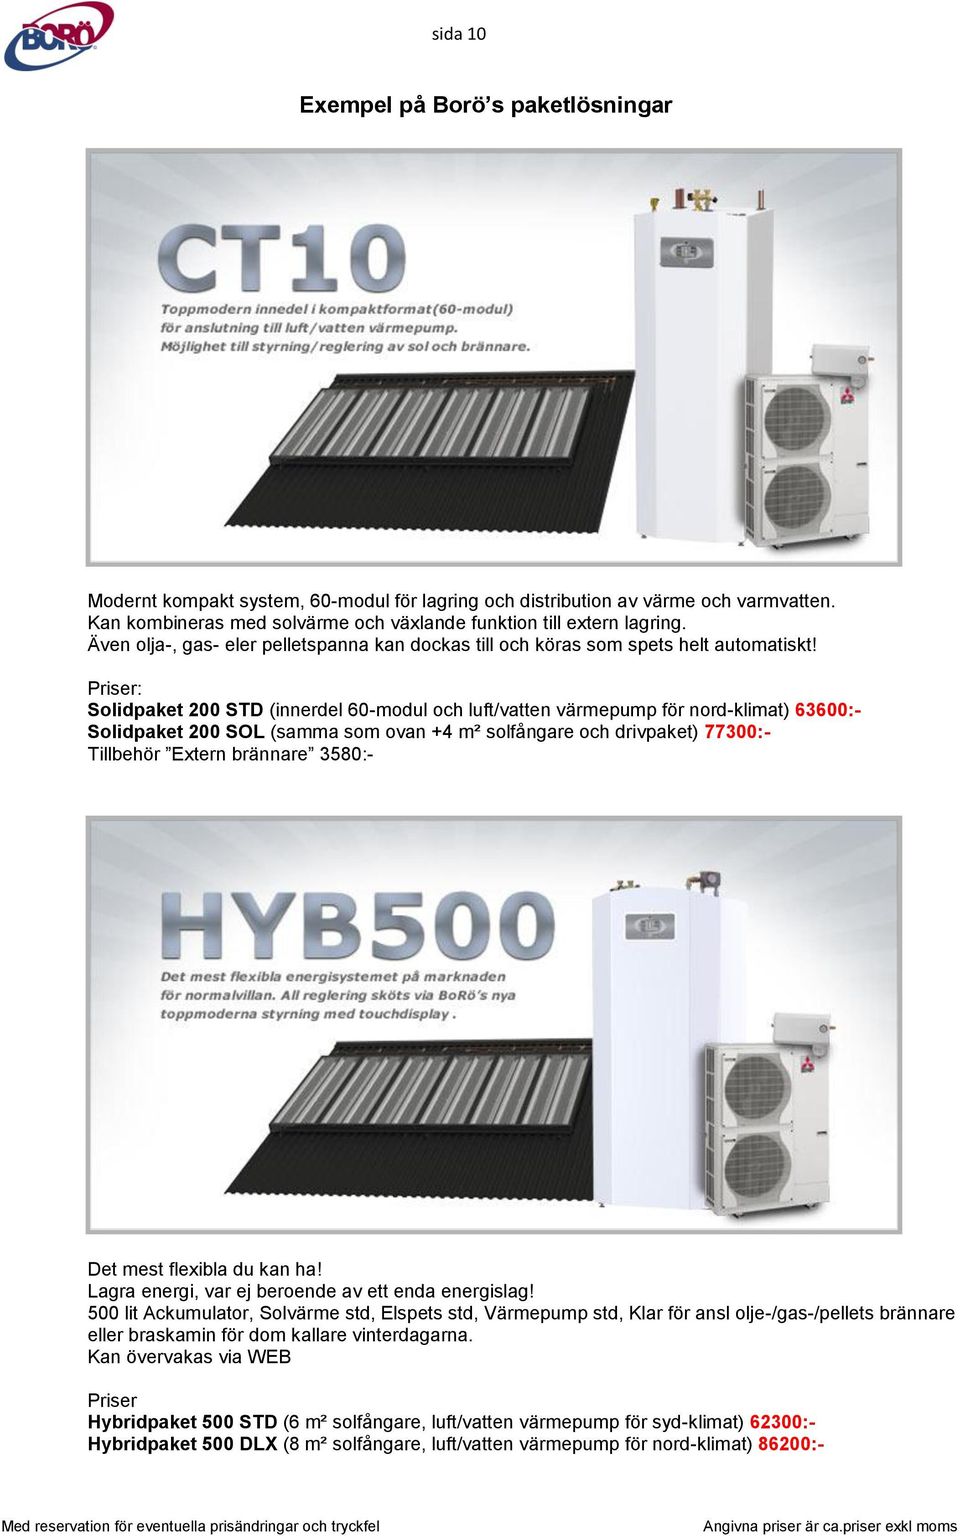 Priser: Solidpaket 200 STD (innerdel 60-modul och luft/vatten värmepump för nord-klimat) 63600:- Solidpaket 200 SOL (samma som ovan +4 m² solfångare och drivpaket) 77300:- Tillbehör Extern brännare